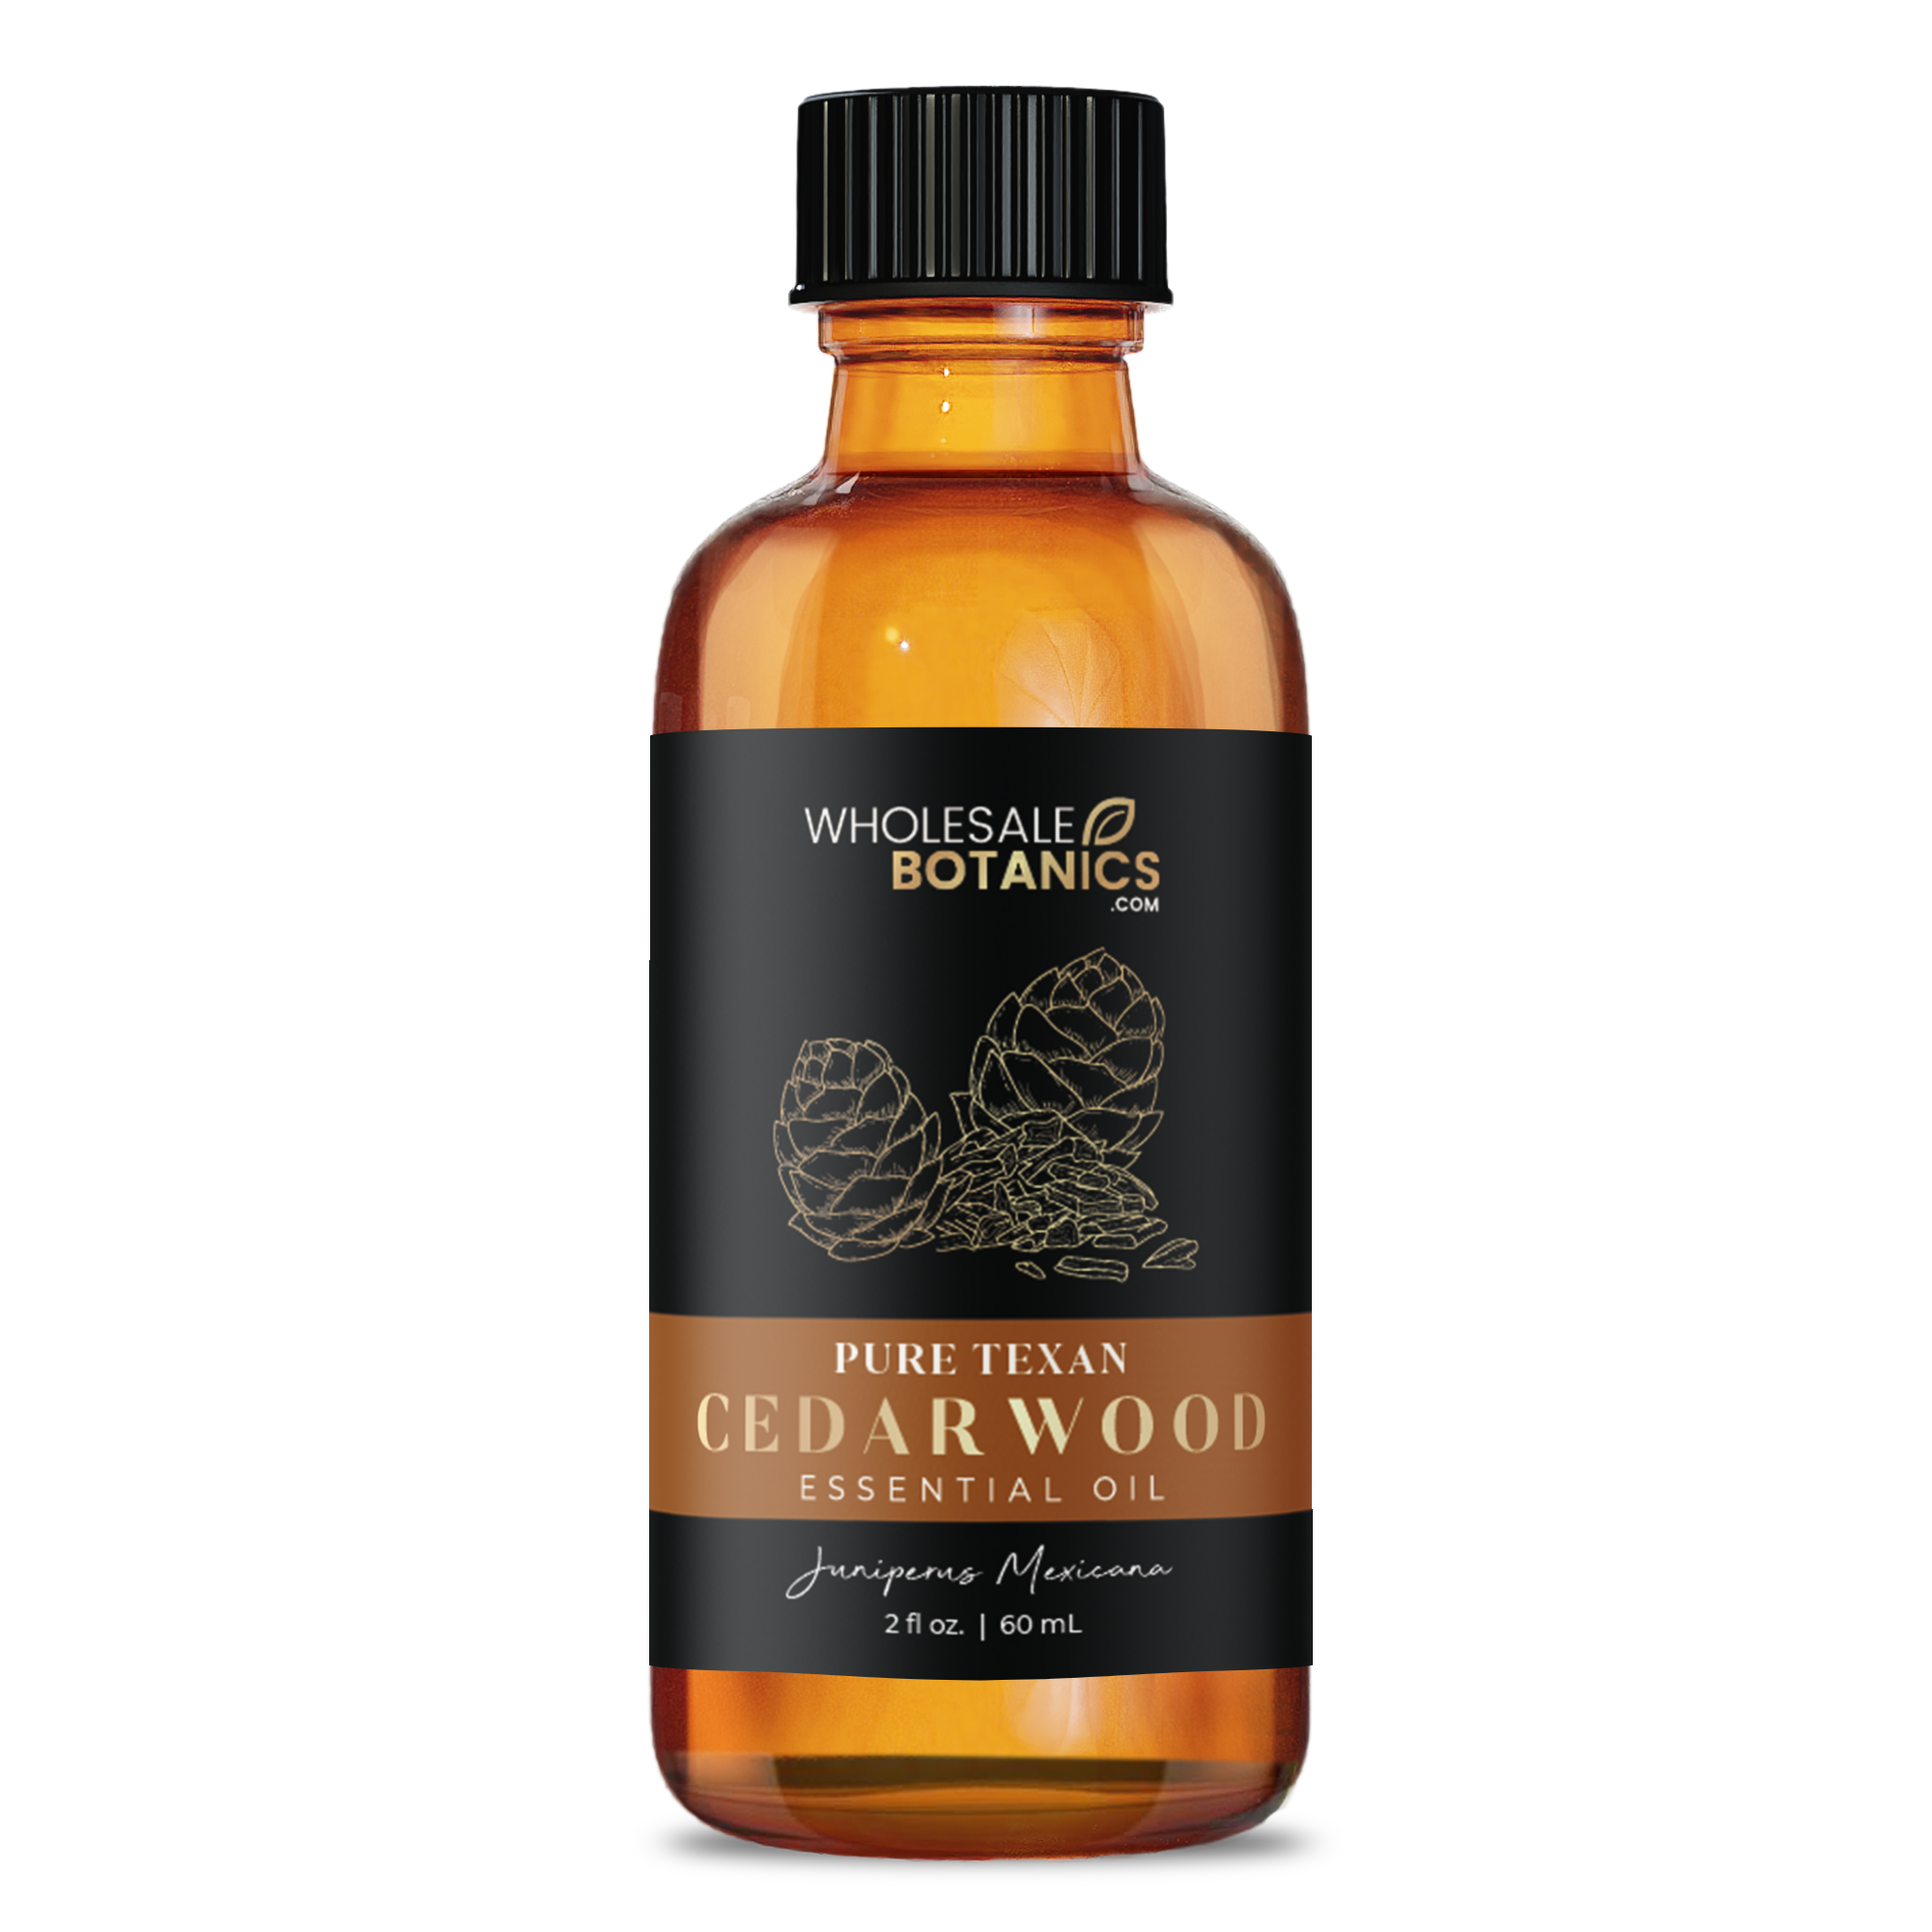 Cedarwood Essential Oil - Purity Texas Cedarwood - 2 oz